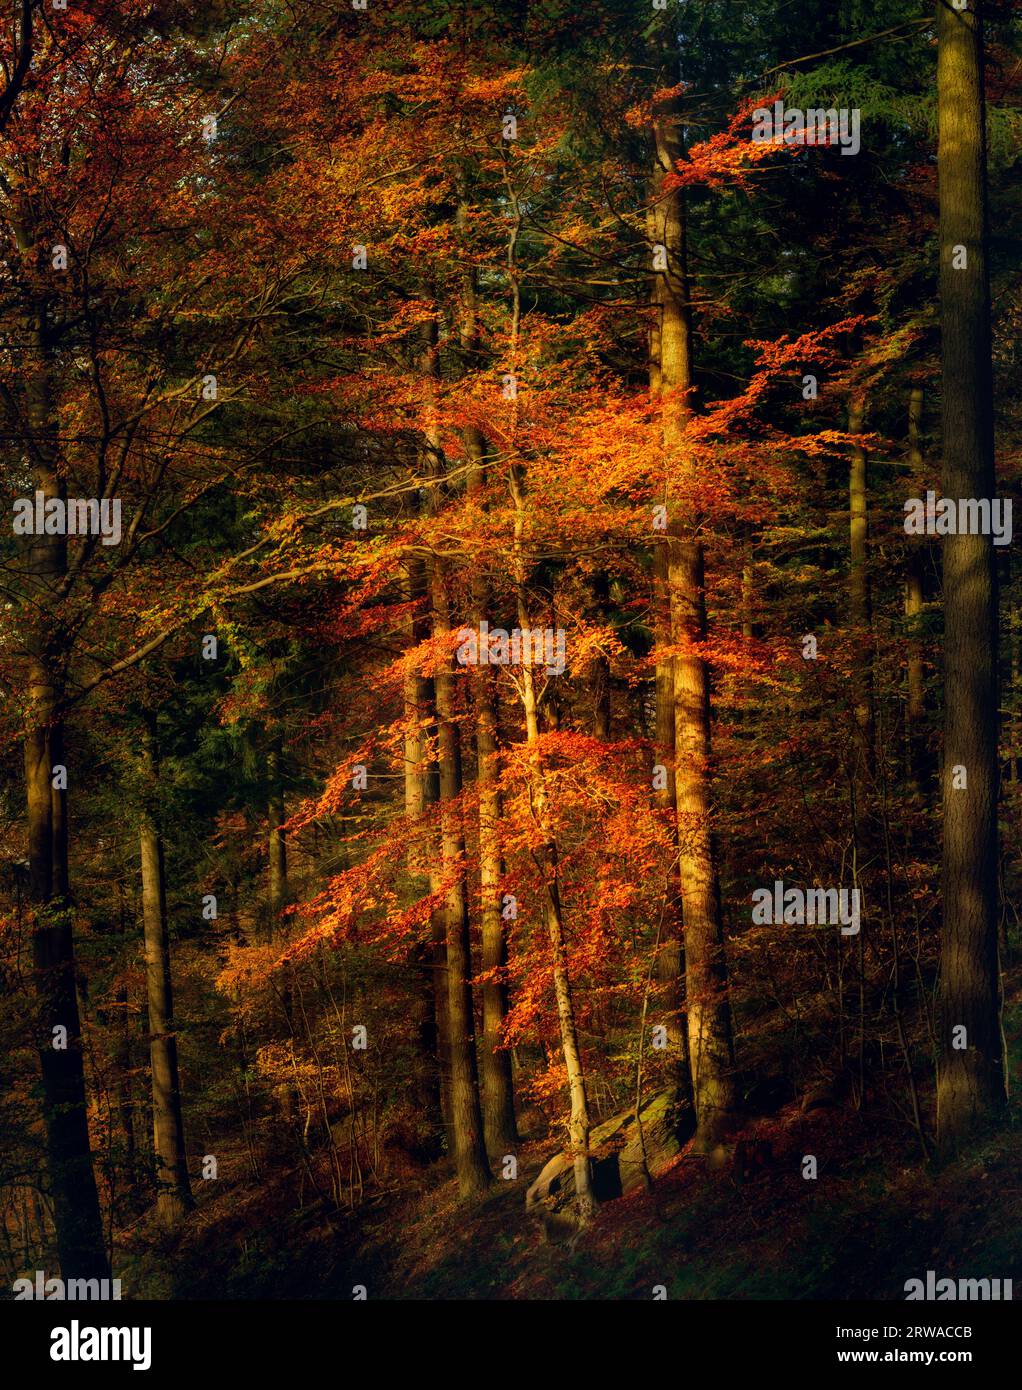 Albero illuminato nella calda luce serale dell'autunno che spicca in legno scuro, con un vivace colore arancione Foto Stock